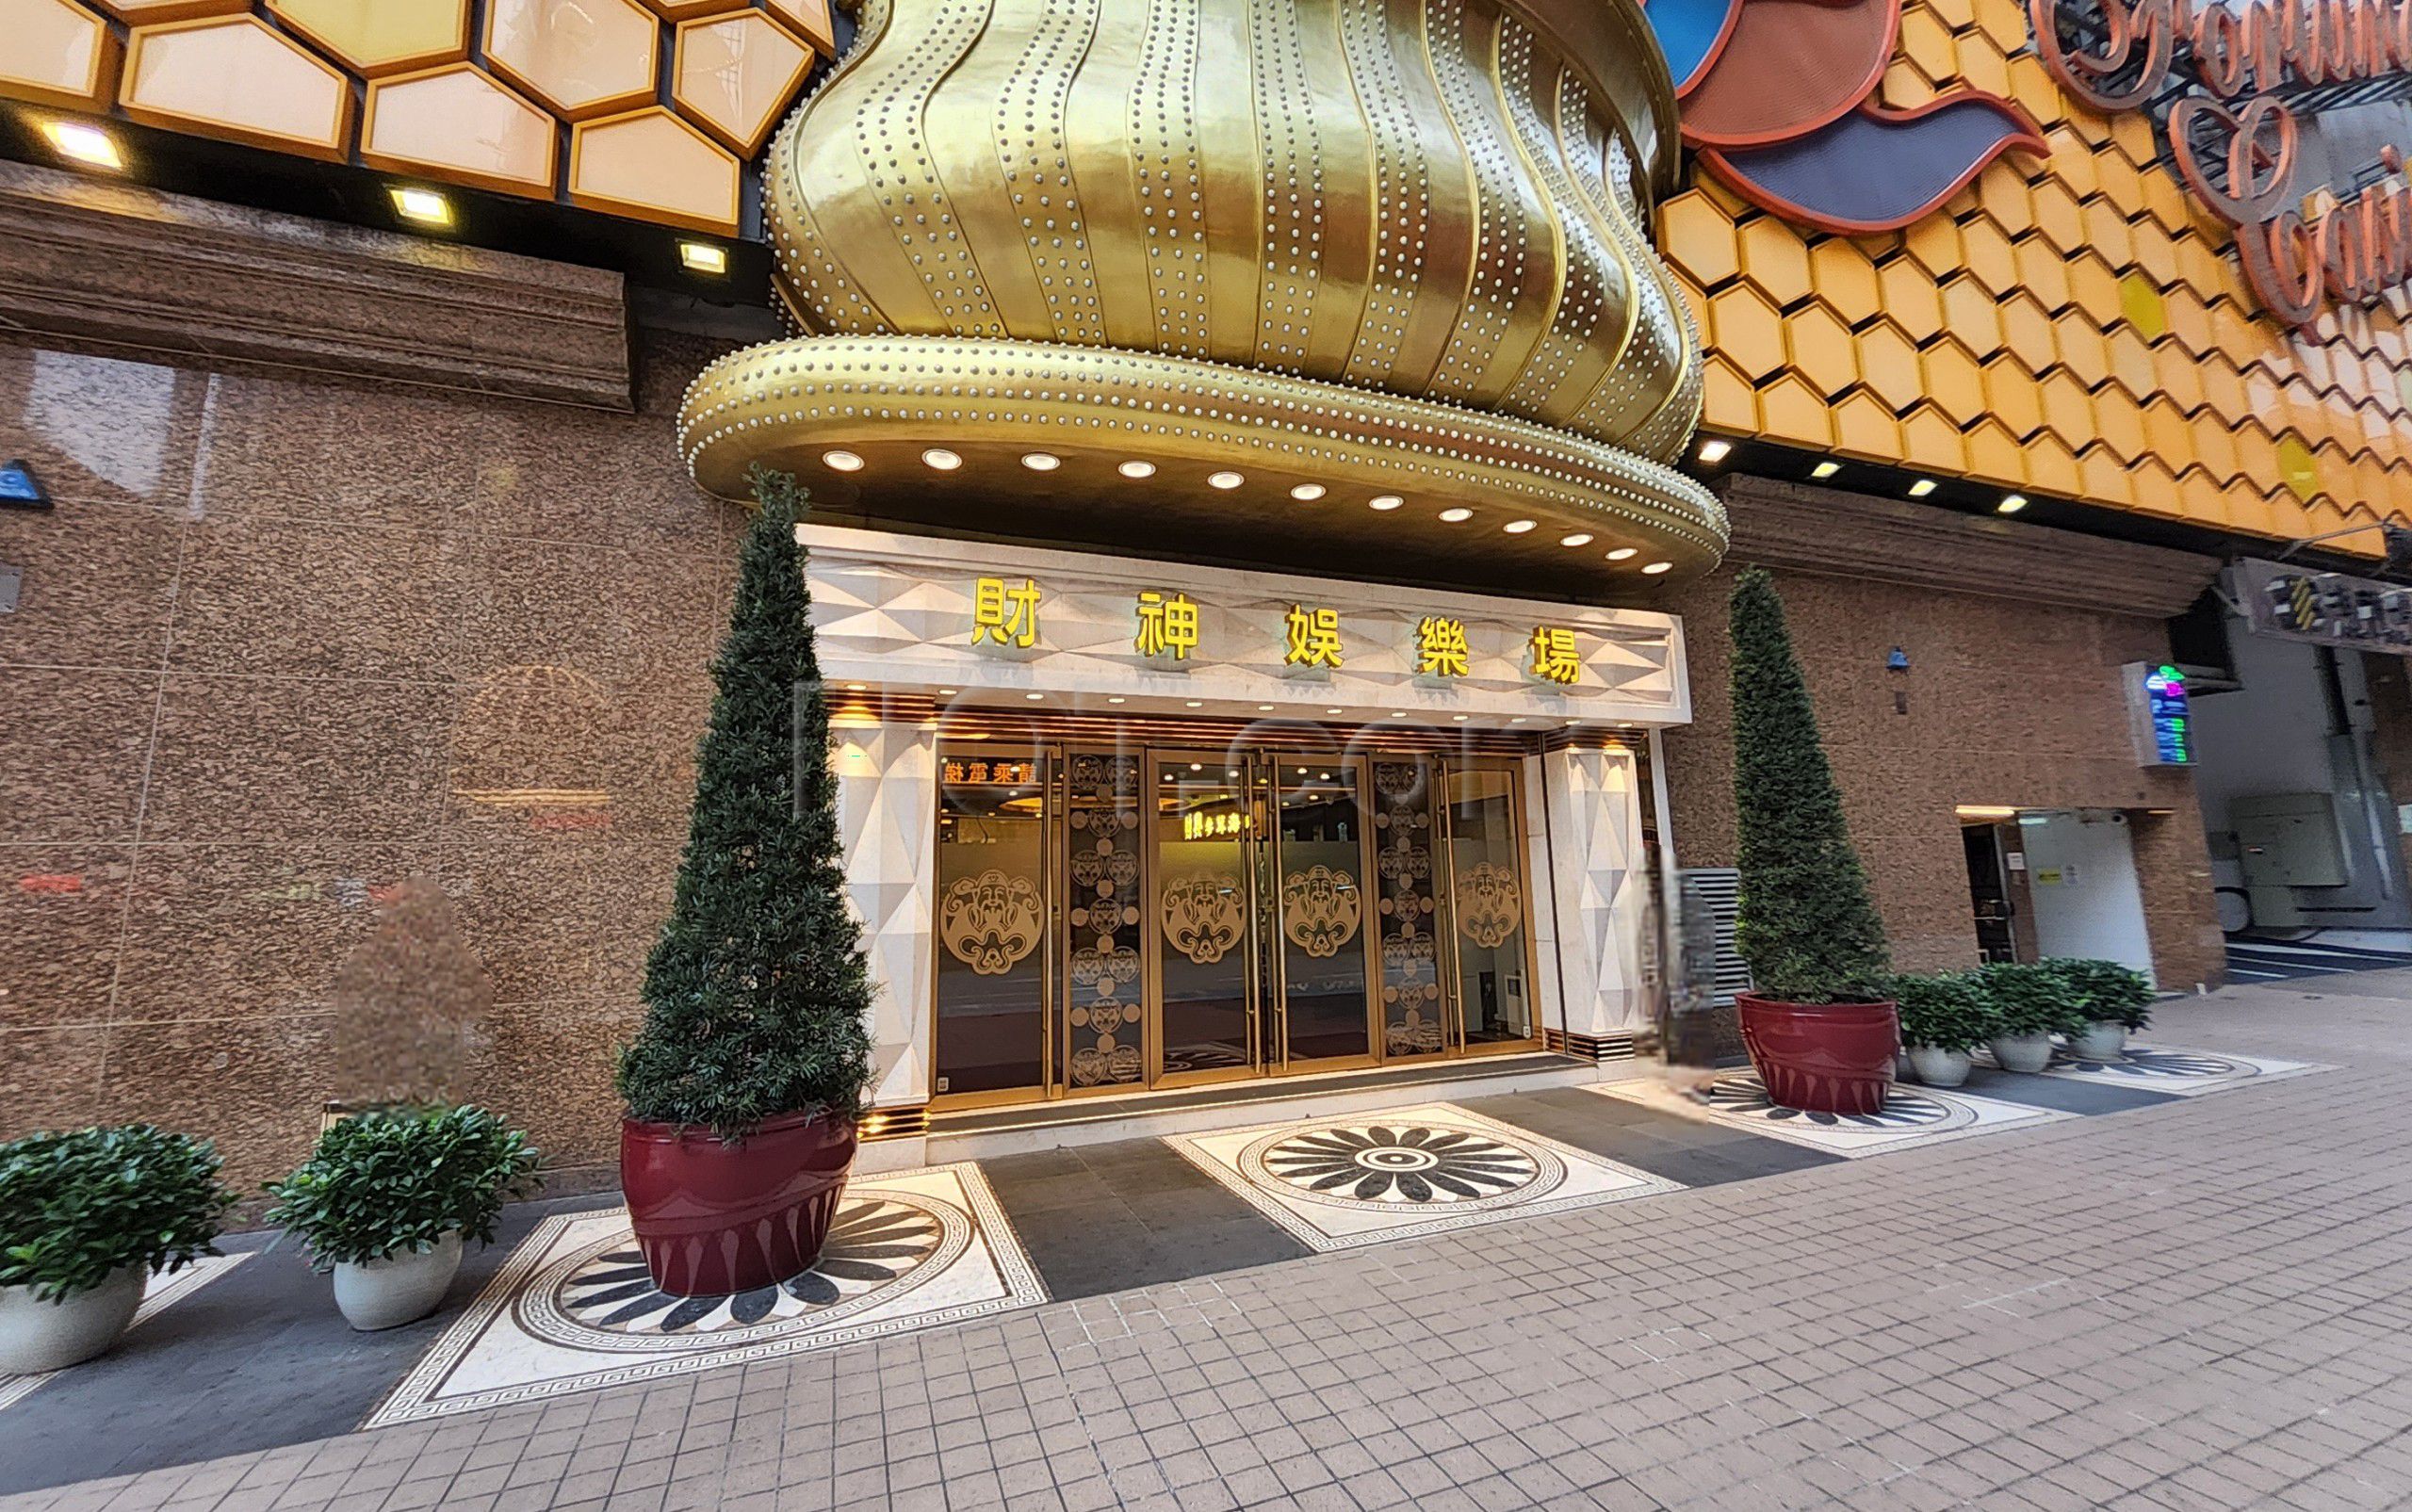 Macau, Macau Fortuna Hotel & Casino